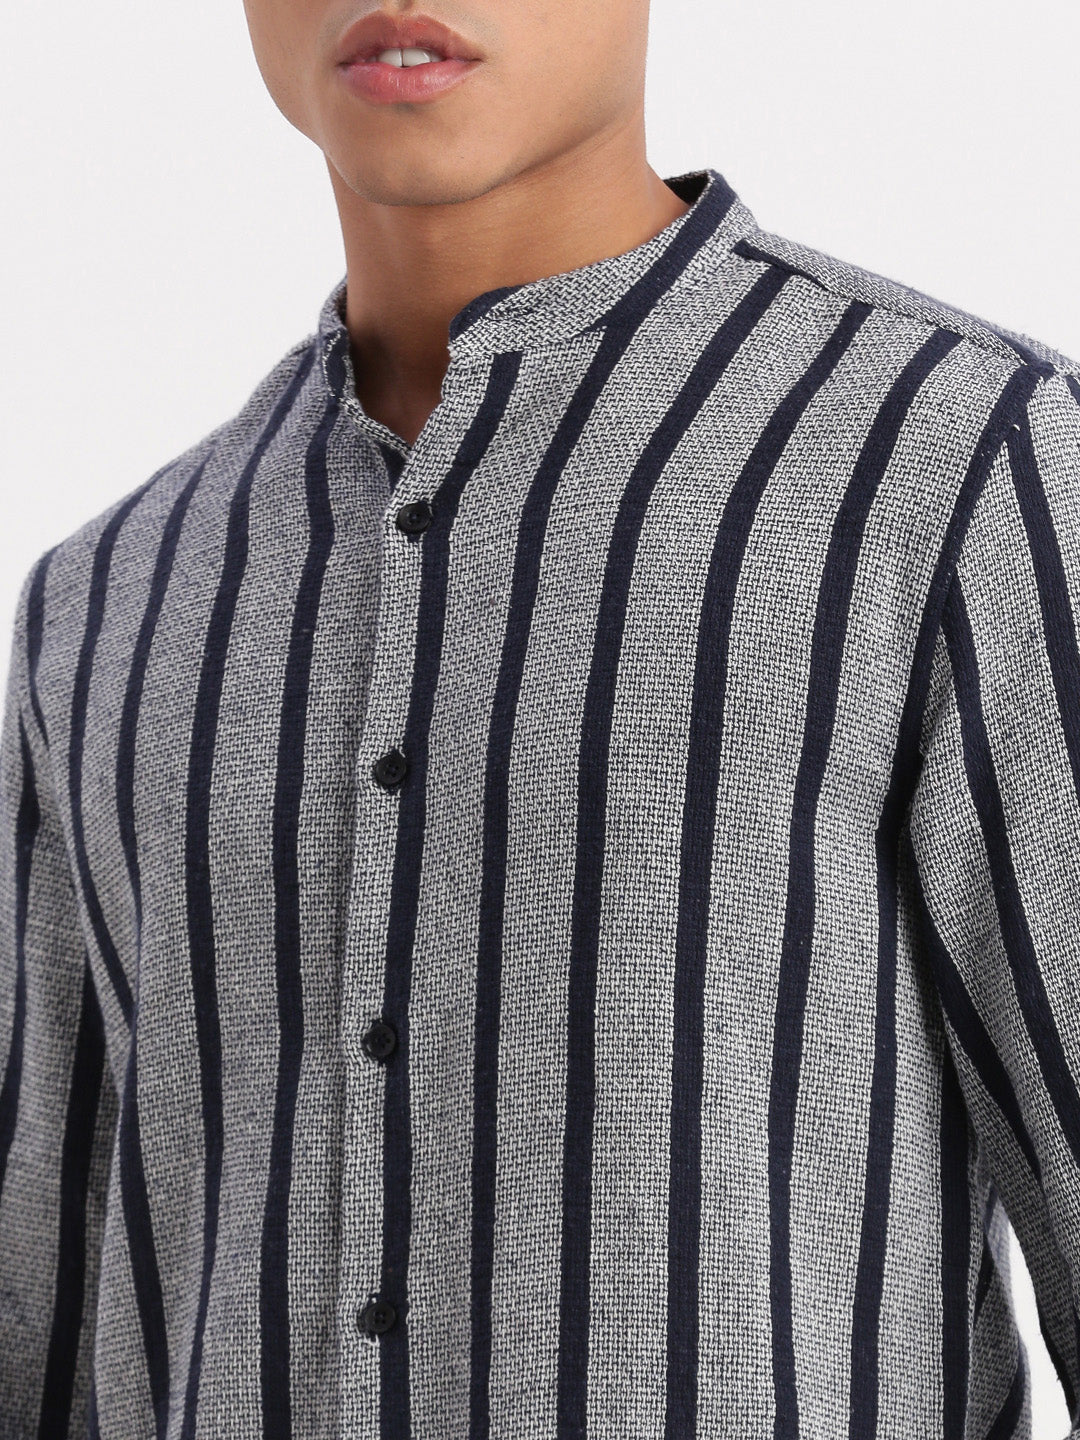 Men Mandarin Collar Vertical Stripes Navy Blue Shirt